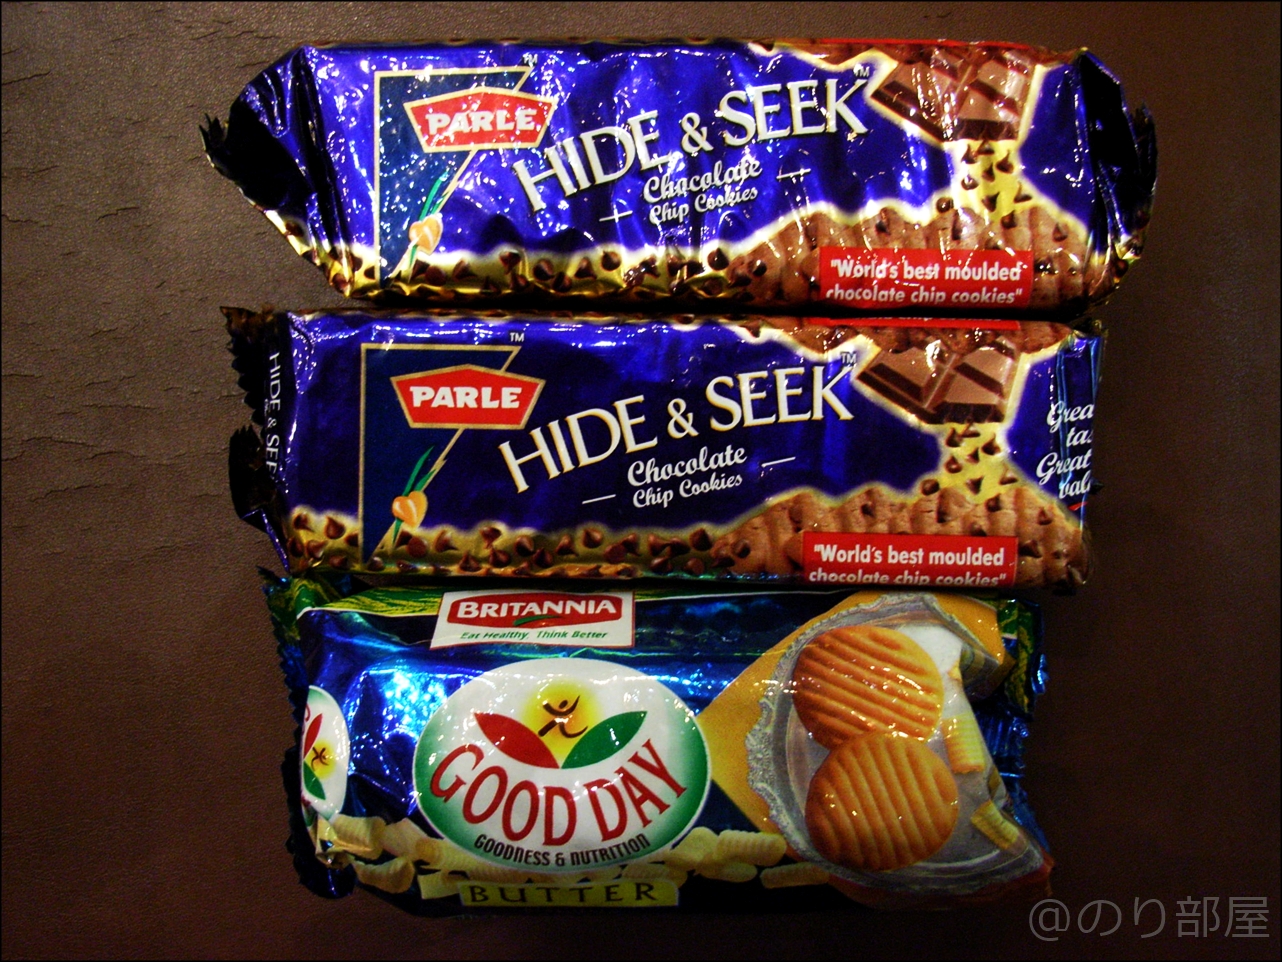 インドのお菓子｢ハイドアンドシーク(HIDE&SEEK)｣が日本で買える！サクサクのチョコレートチップクッキーが美味しい！